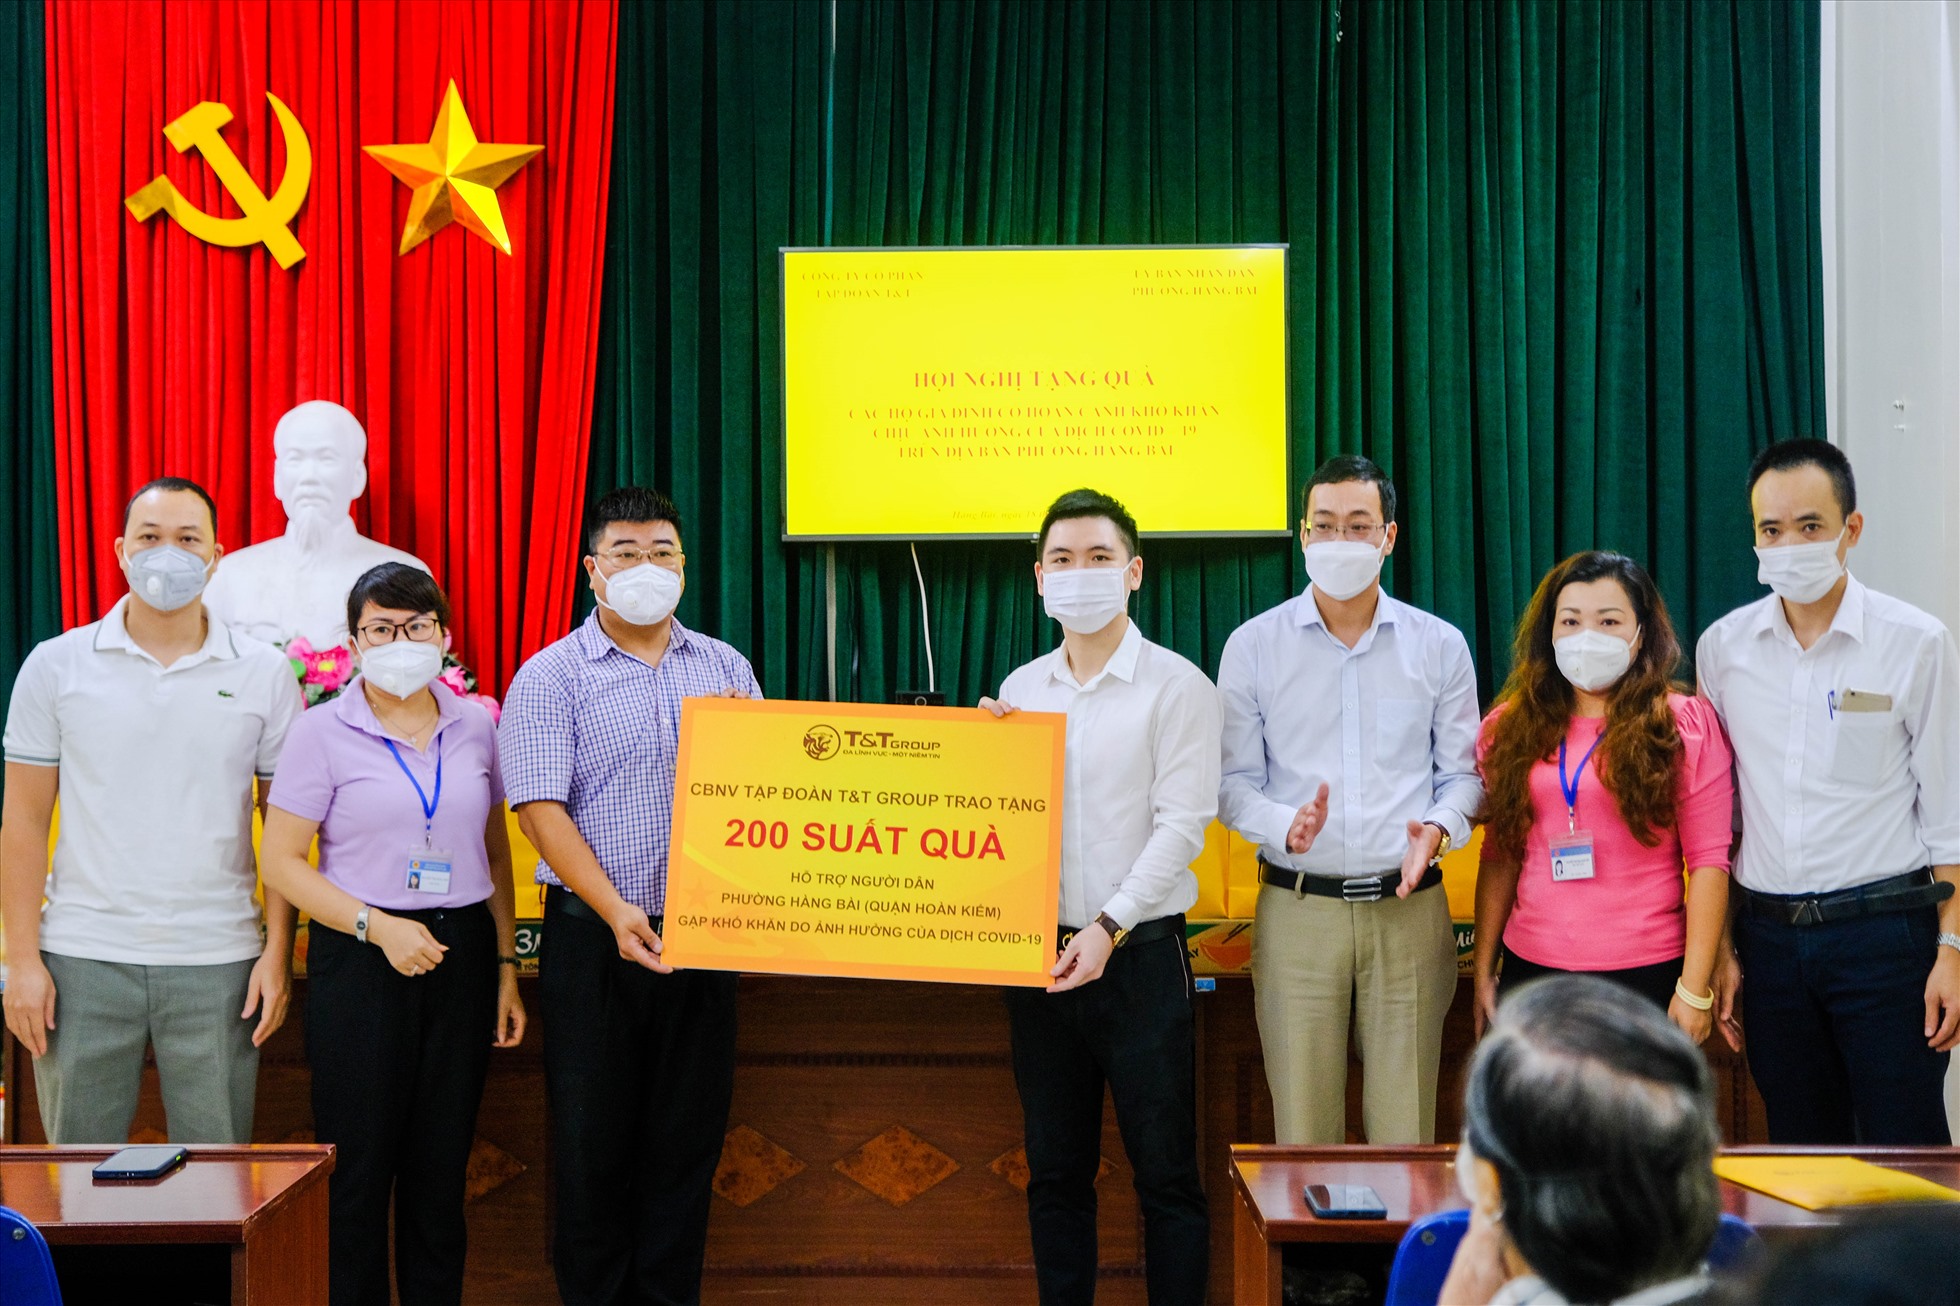 Ông Đỗ Vinh Quang và CBNV T&T Group trao tặng hàng ngàn suất quà tình nghĩa cho người dân Hà Nội gặp khó khăn do ảnh hưởng bởi dịch COVID-19.